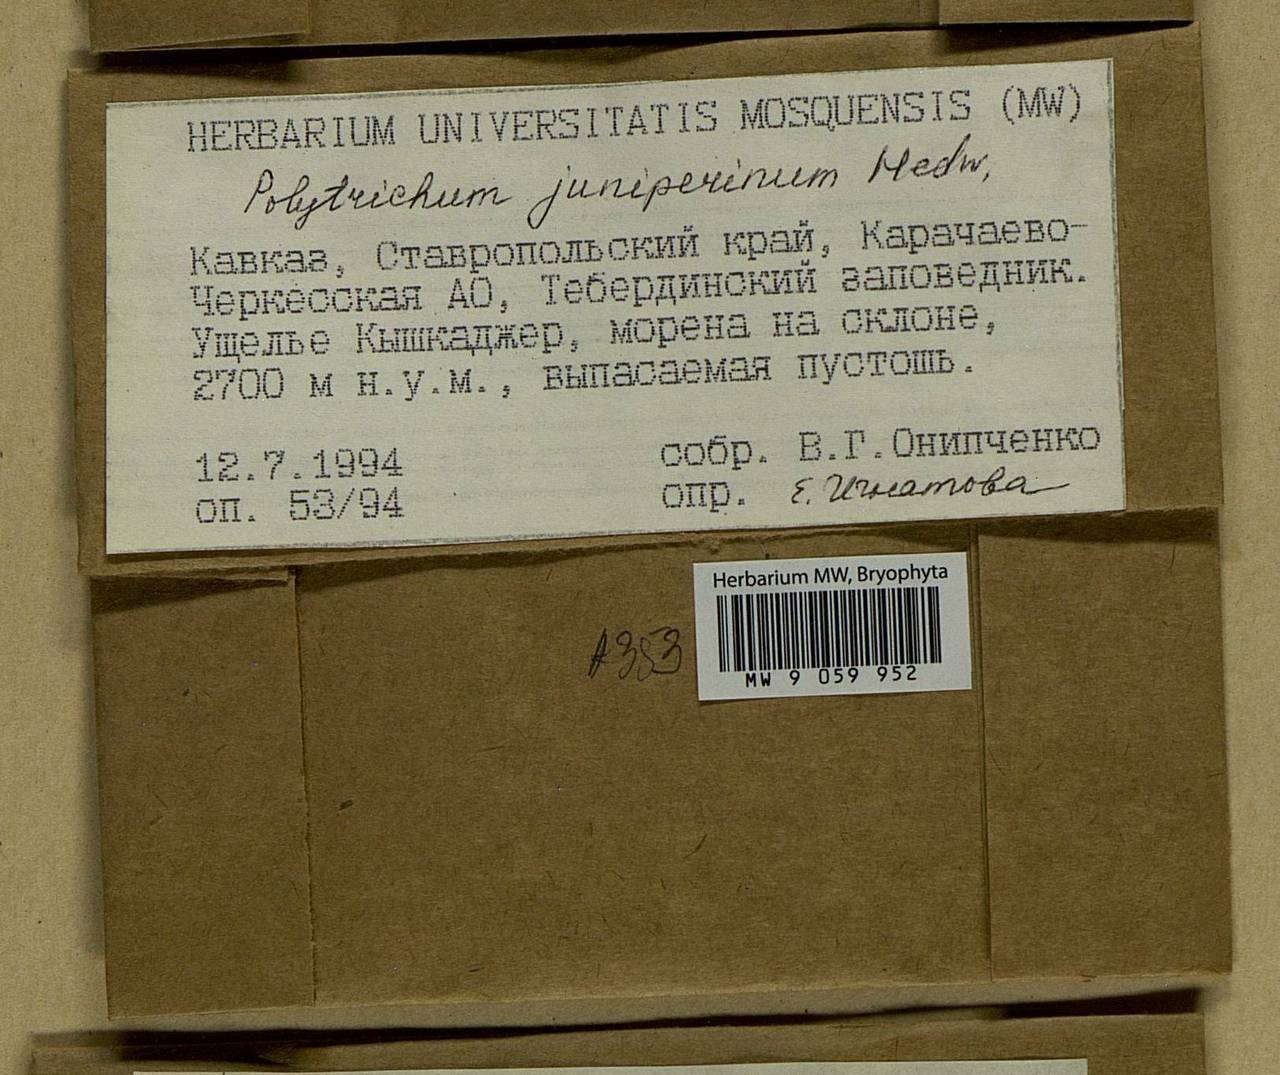 Polytrichum juniperinum Hedw., Гербарий мохообразных, Мхи - Северный Кавказ и Предкавказье (B12) (Россия)